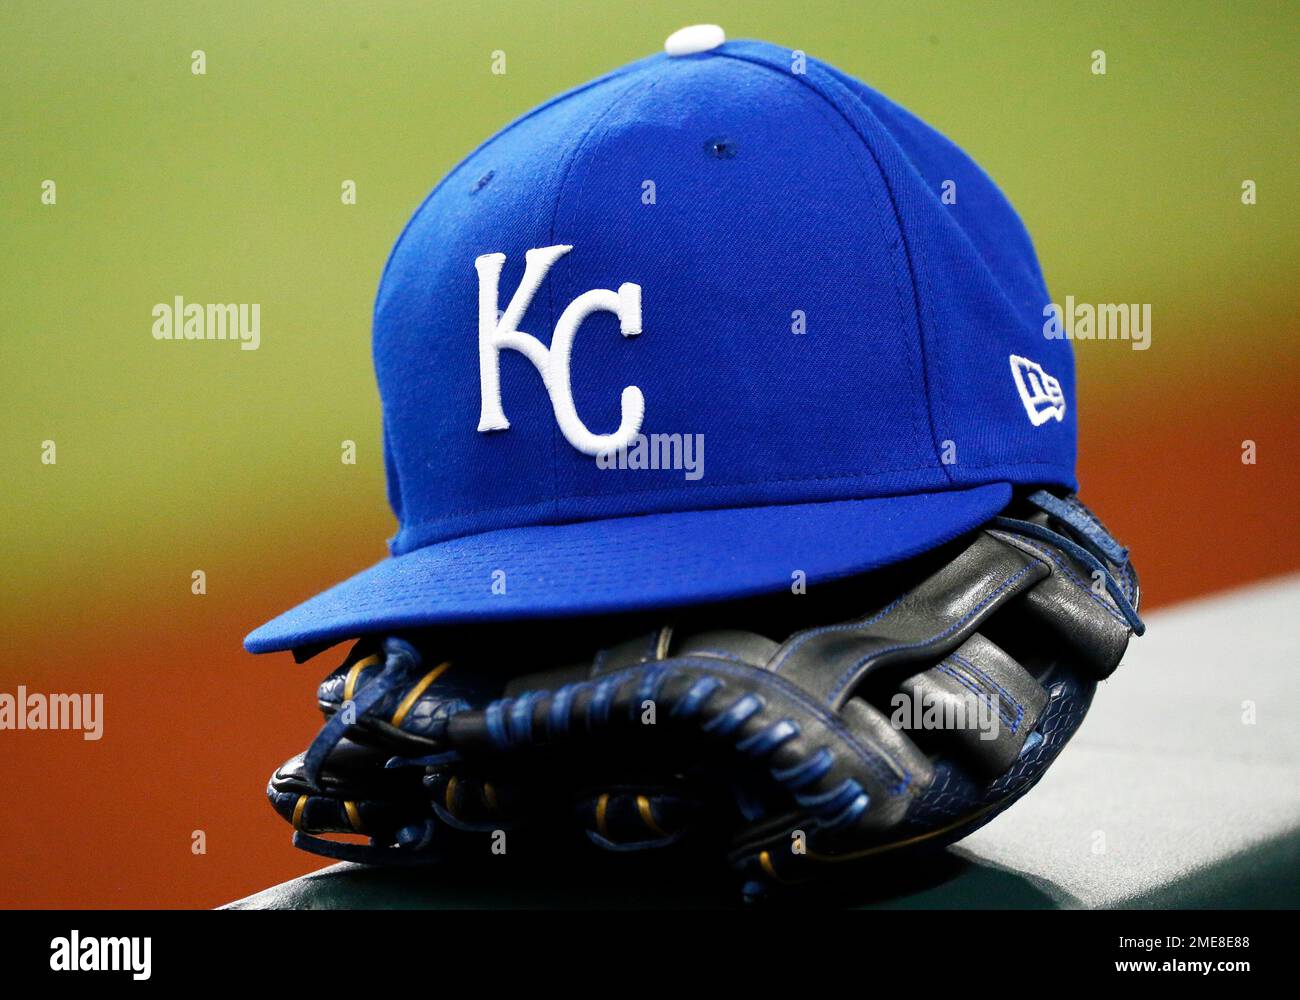 royals baseball cap